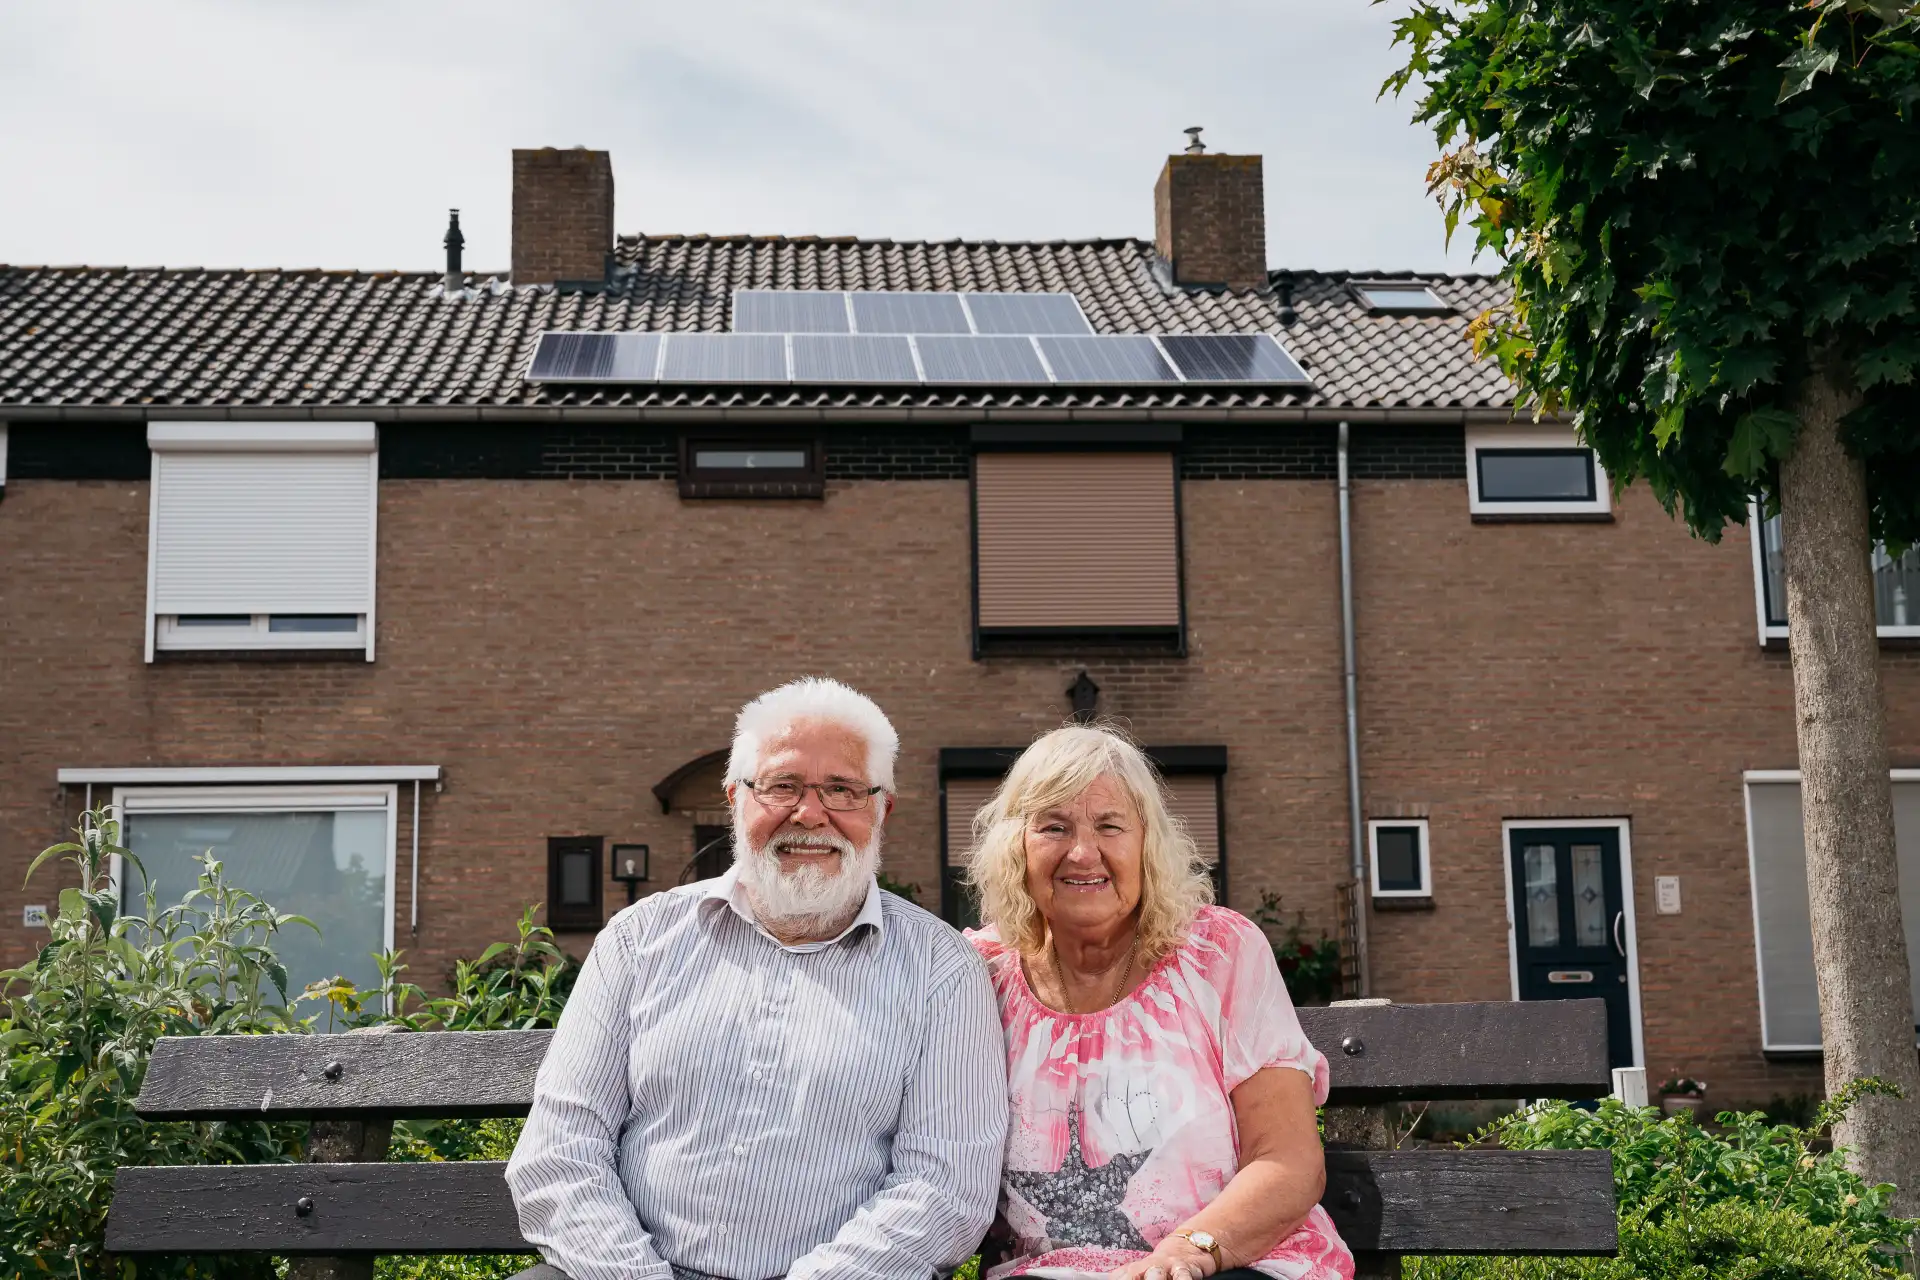 Dhr. en Mevr. van Weerdhuizen uit Middelburg met zonnepanelen